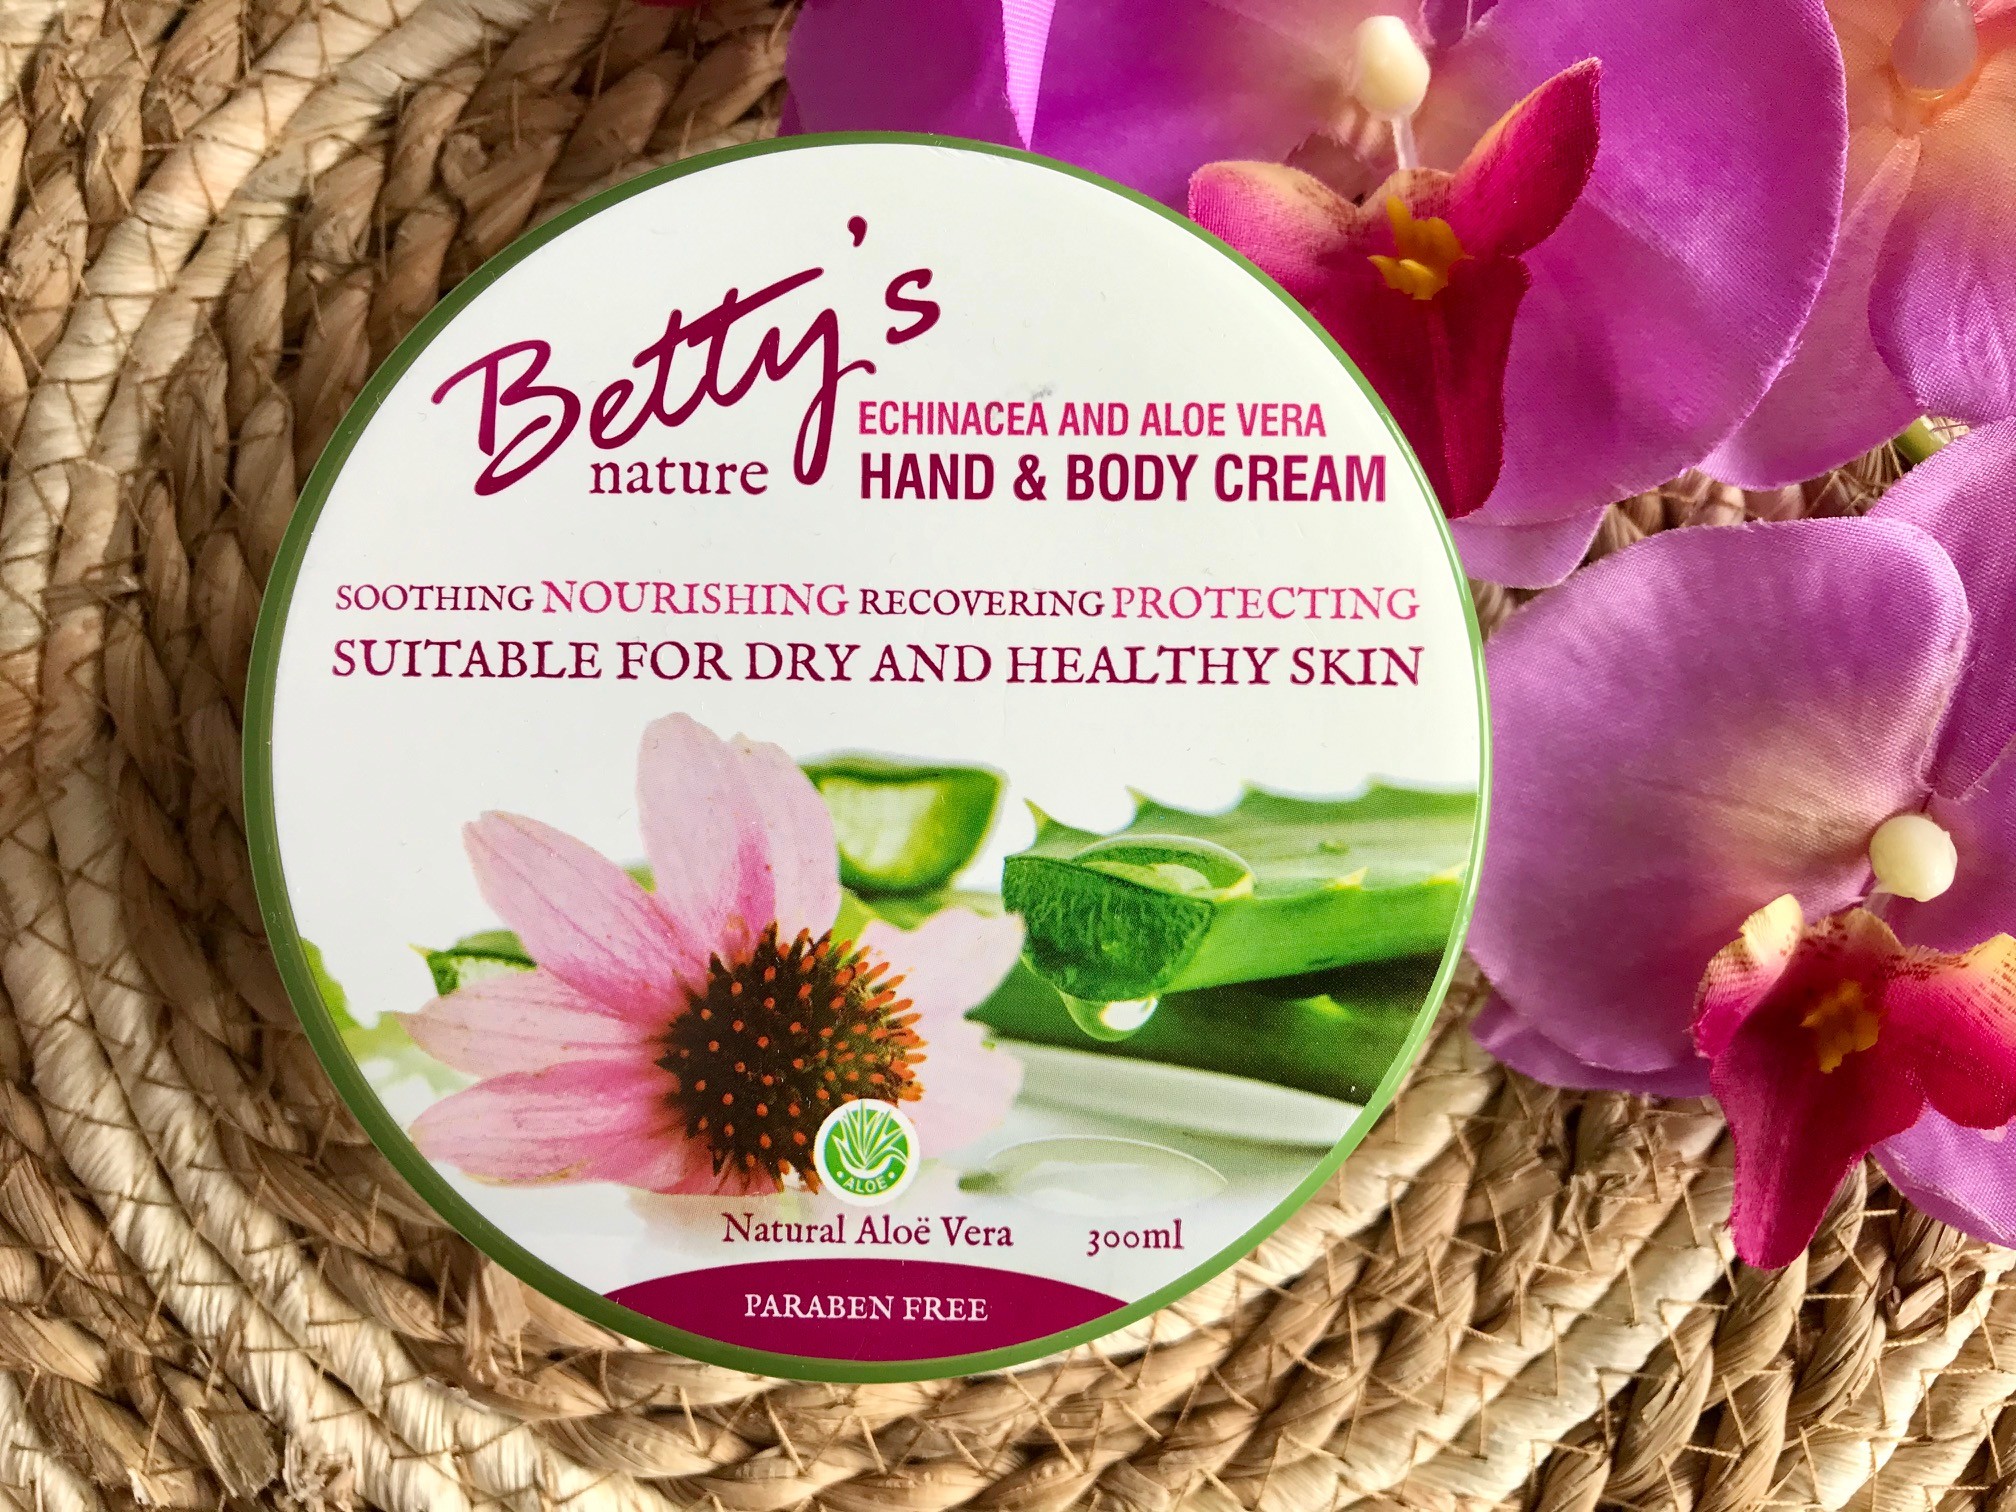 betty's nature hand & body cream